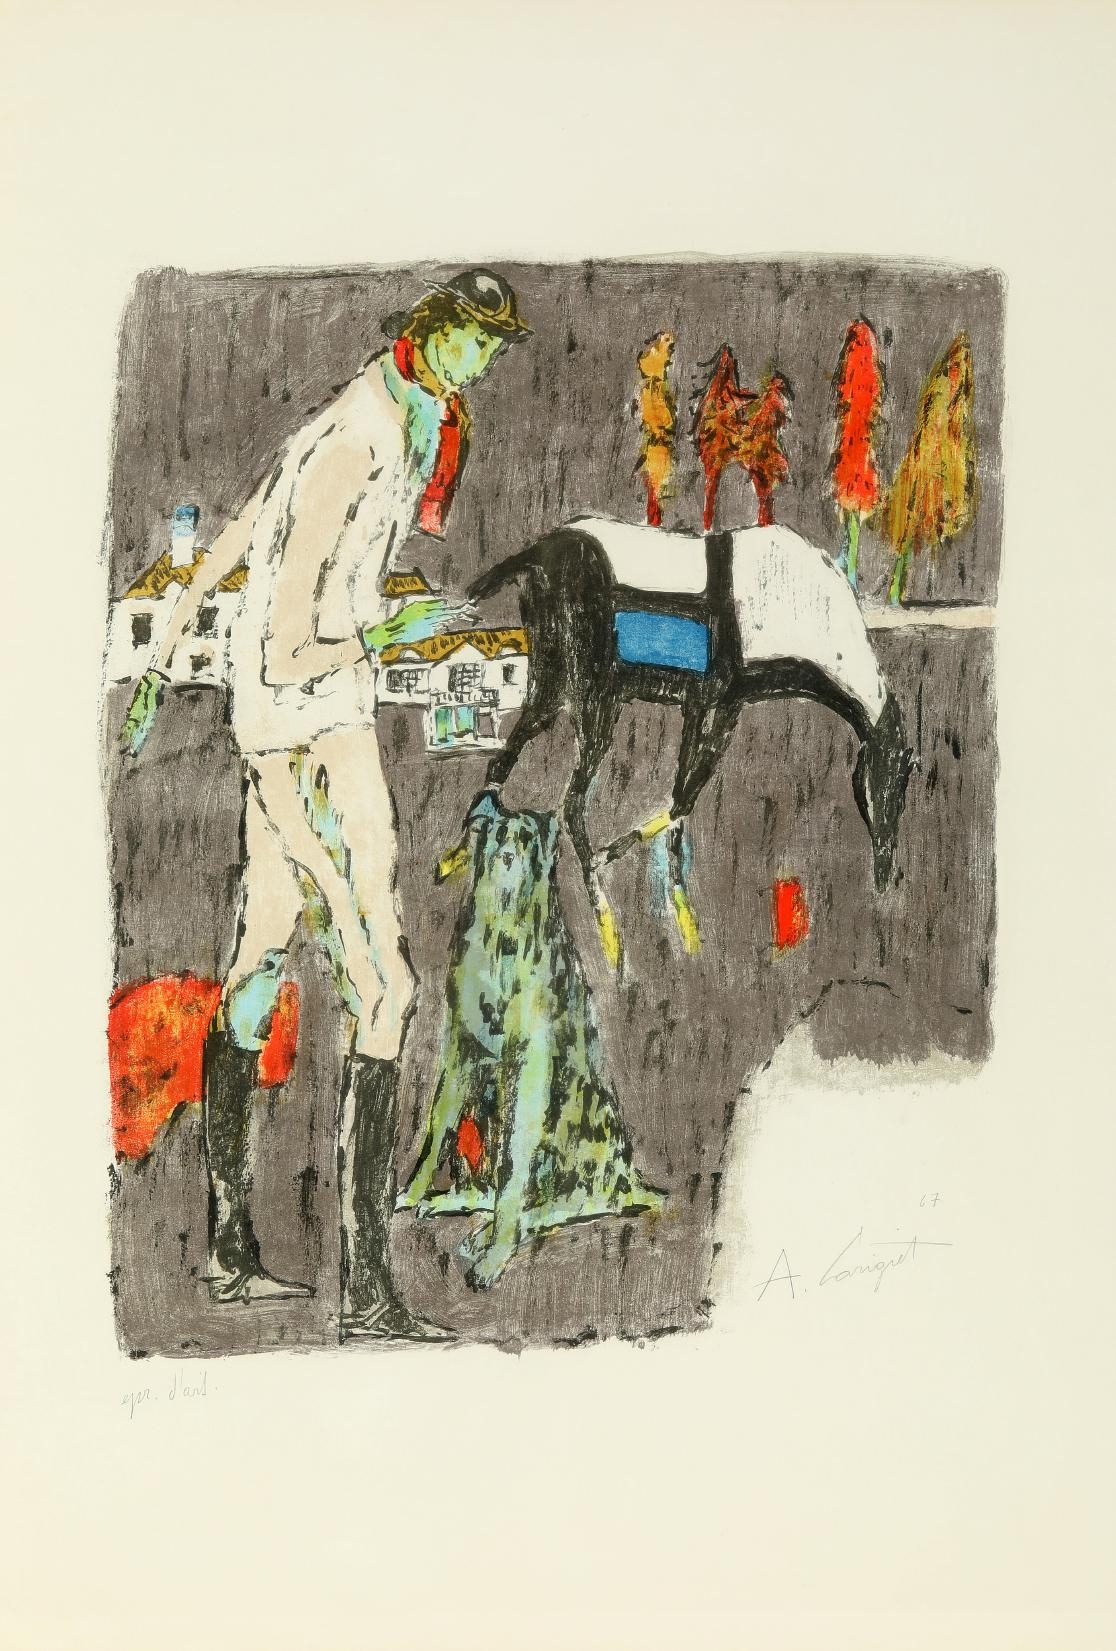 Reiterin mit Hund by Alois Carigiet, 1967